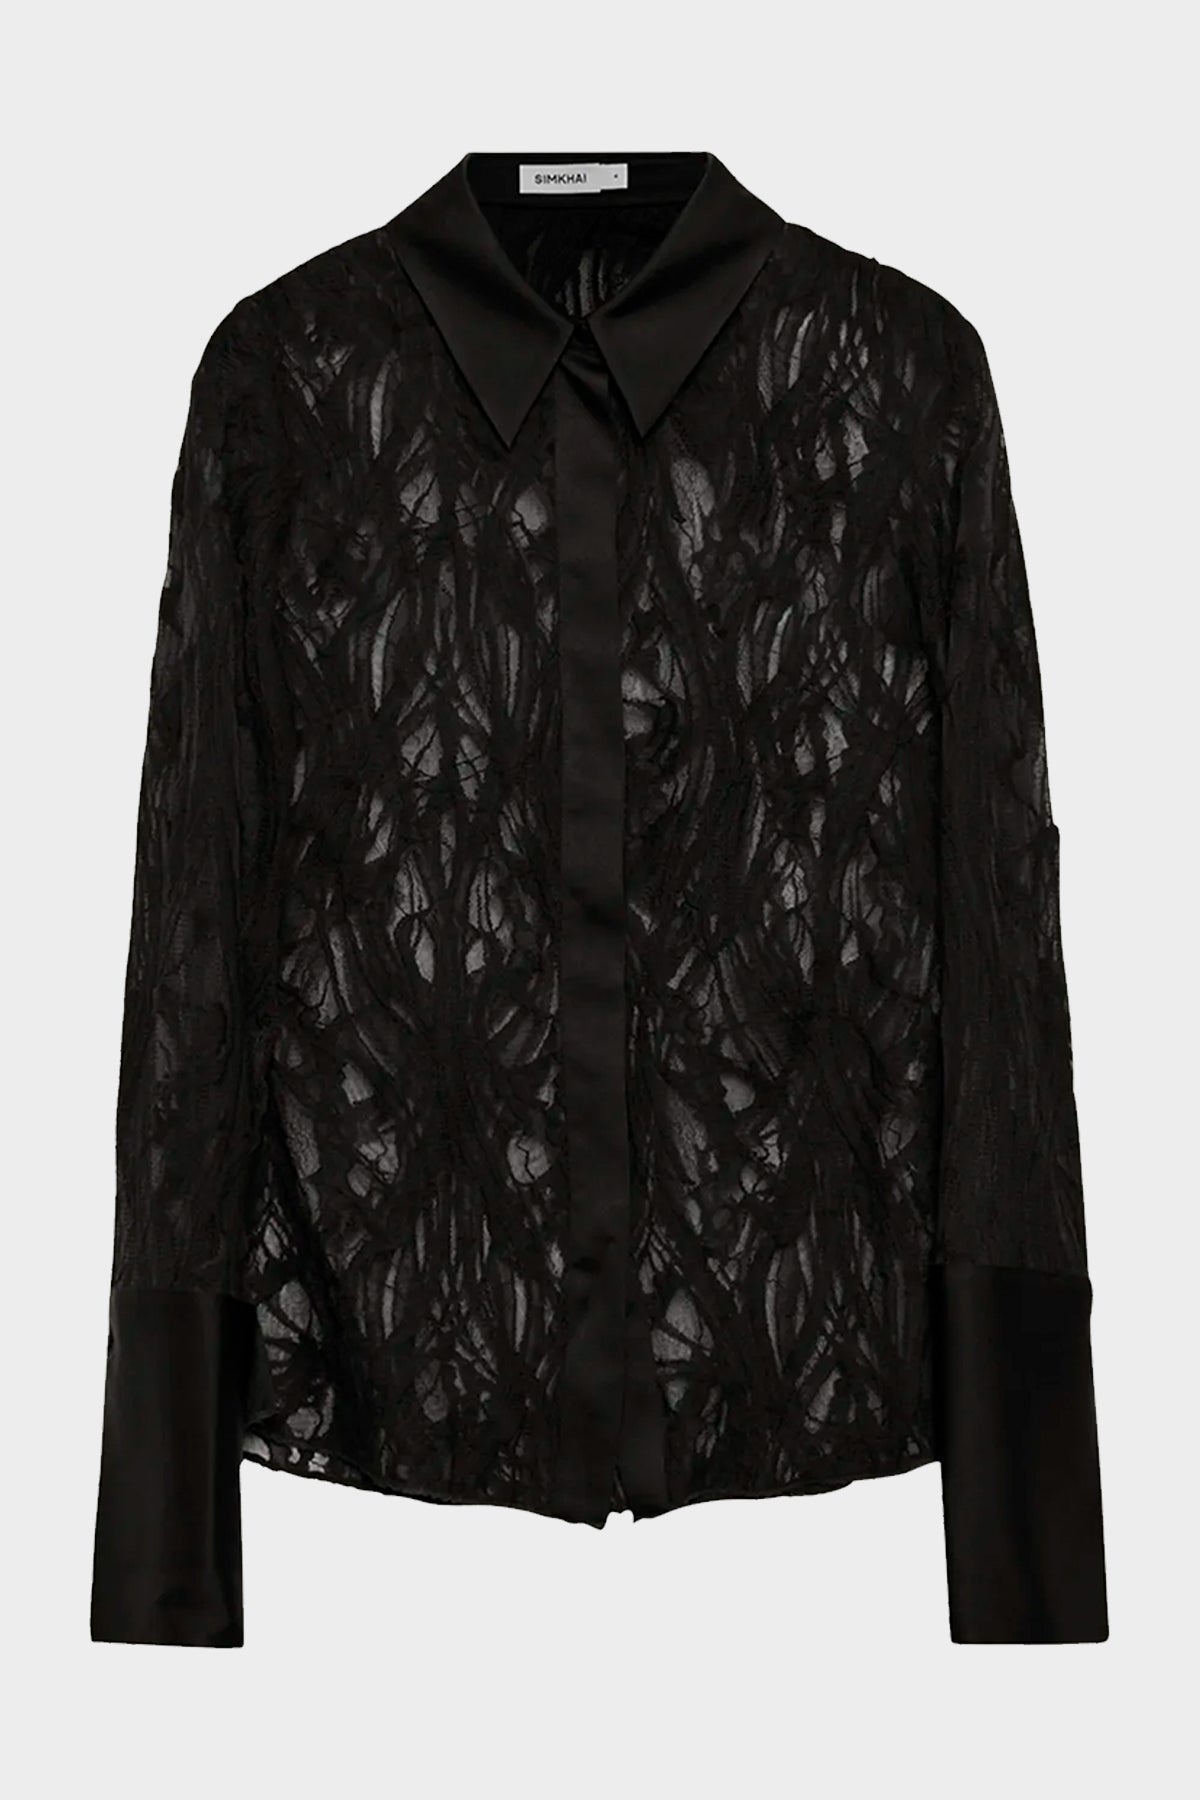 Candela Shirt in Black - shop-olivia.com